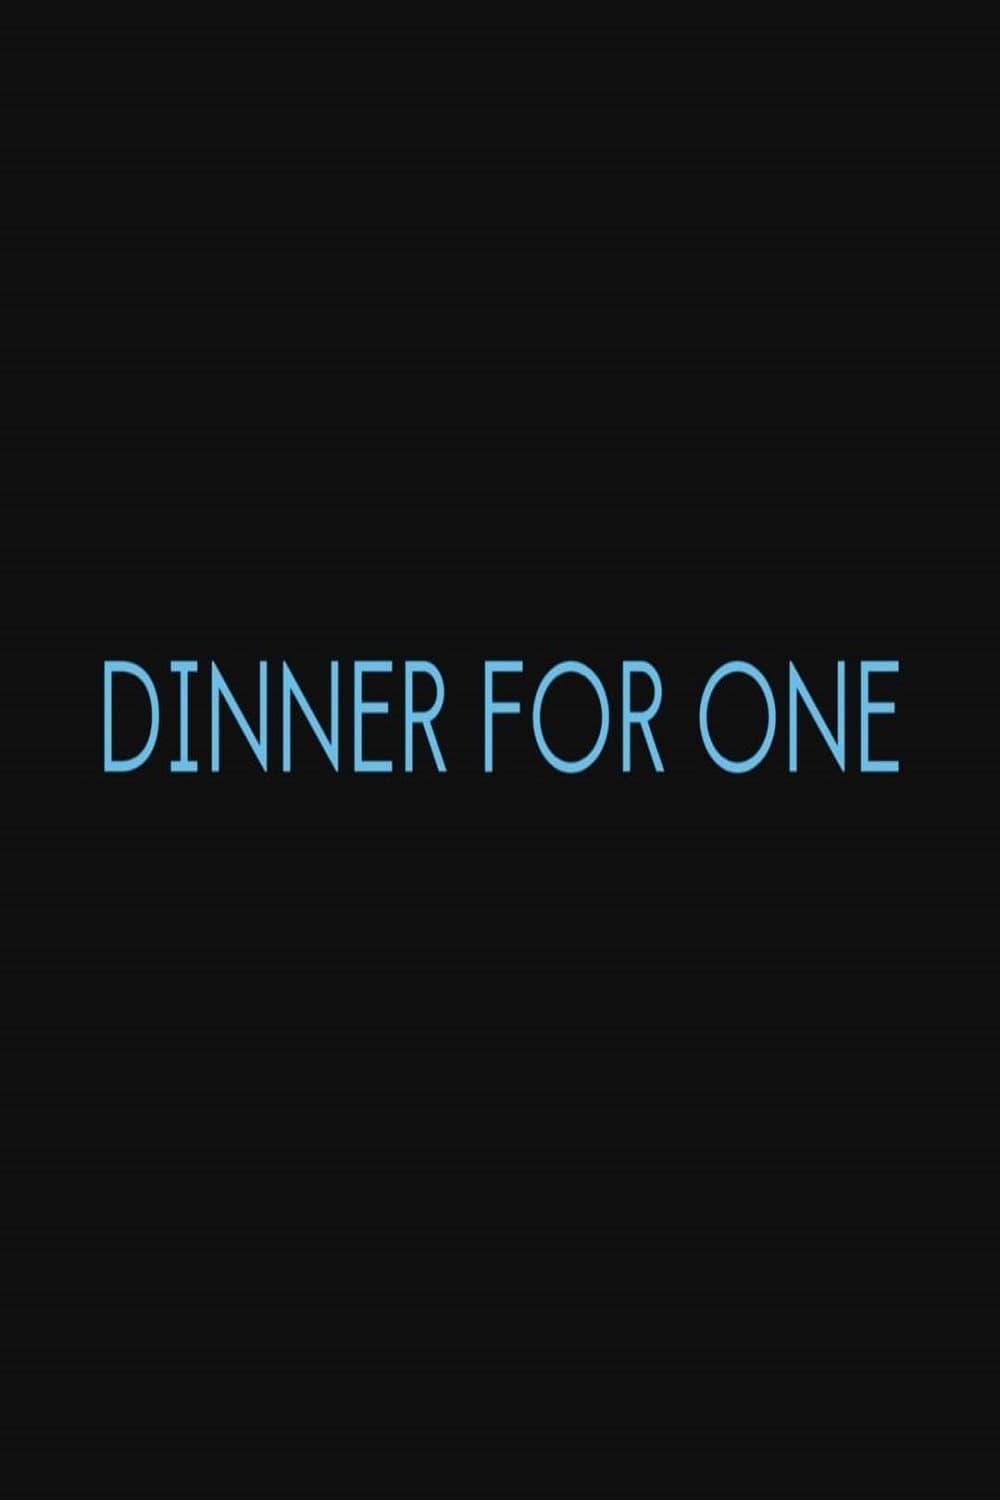 Dinner for One